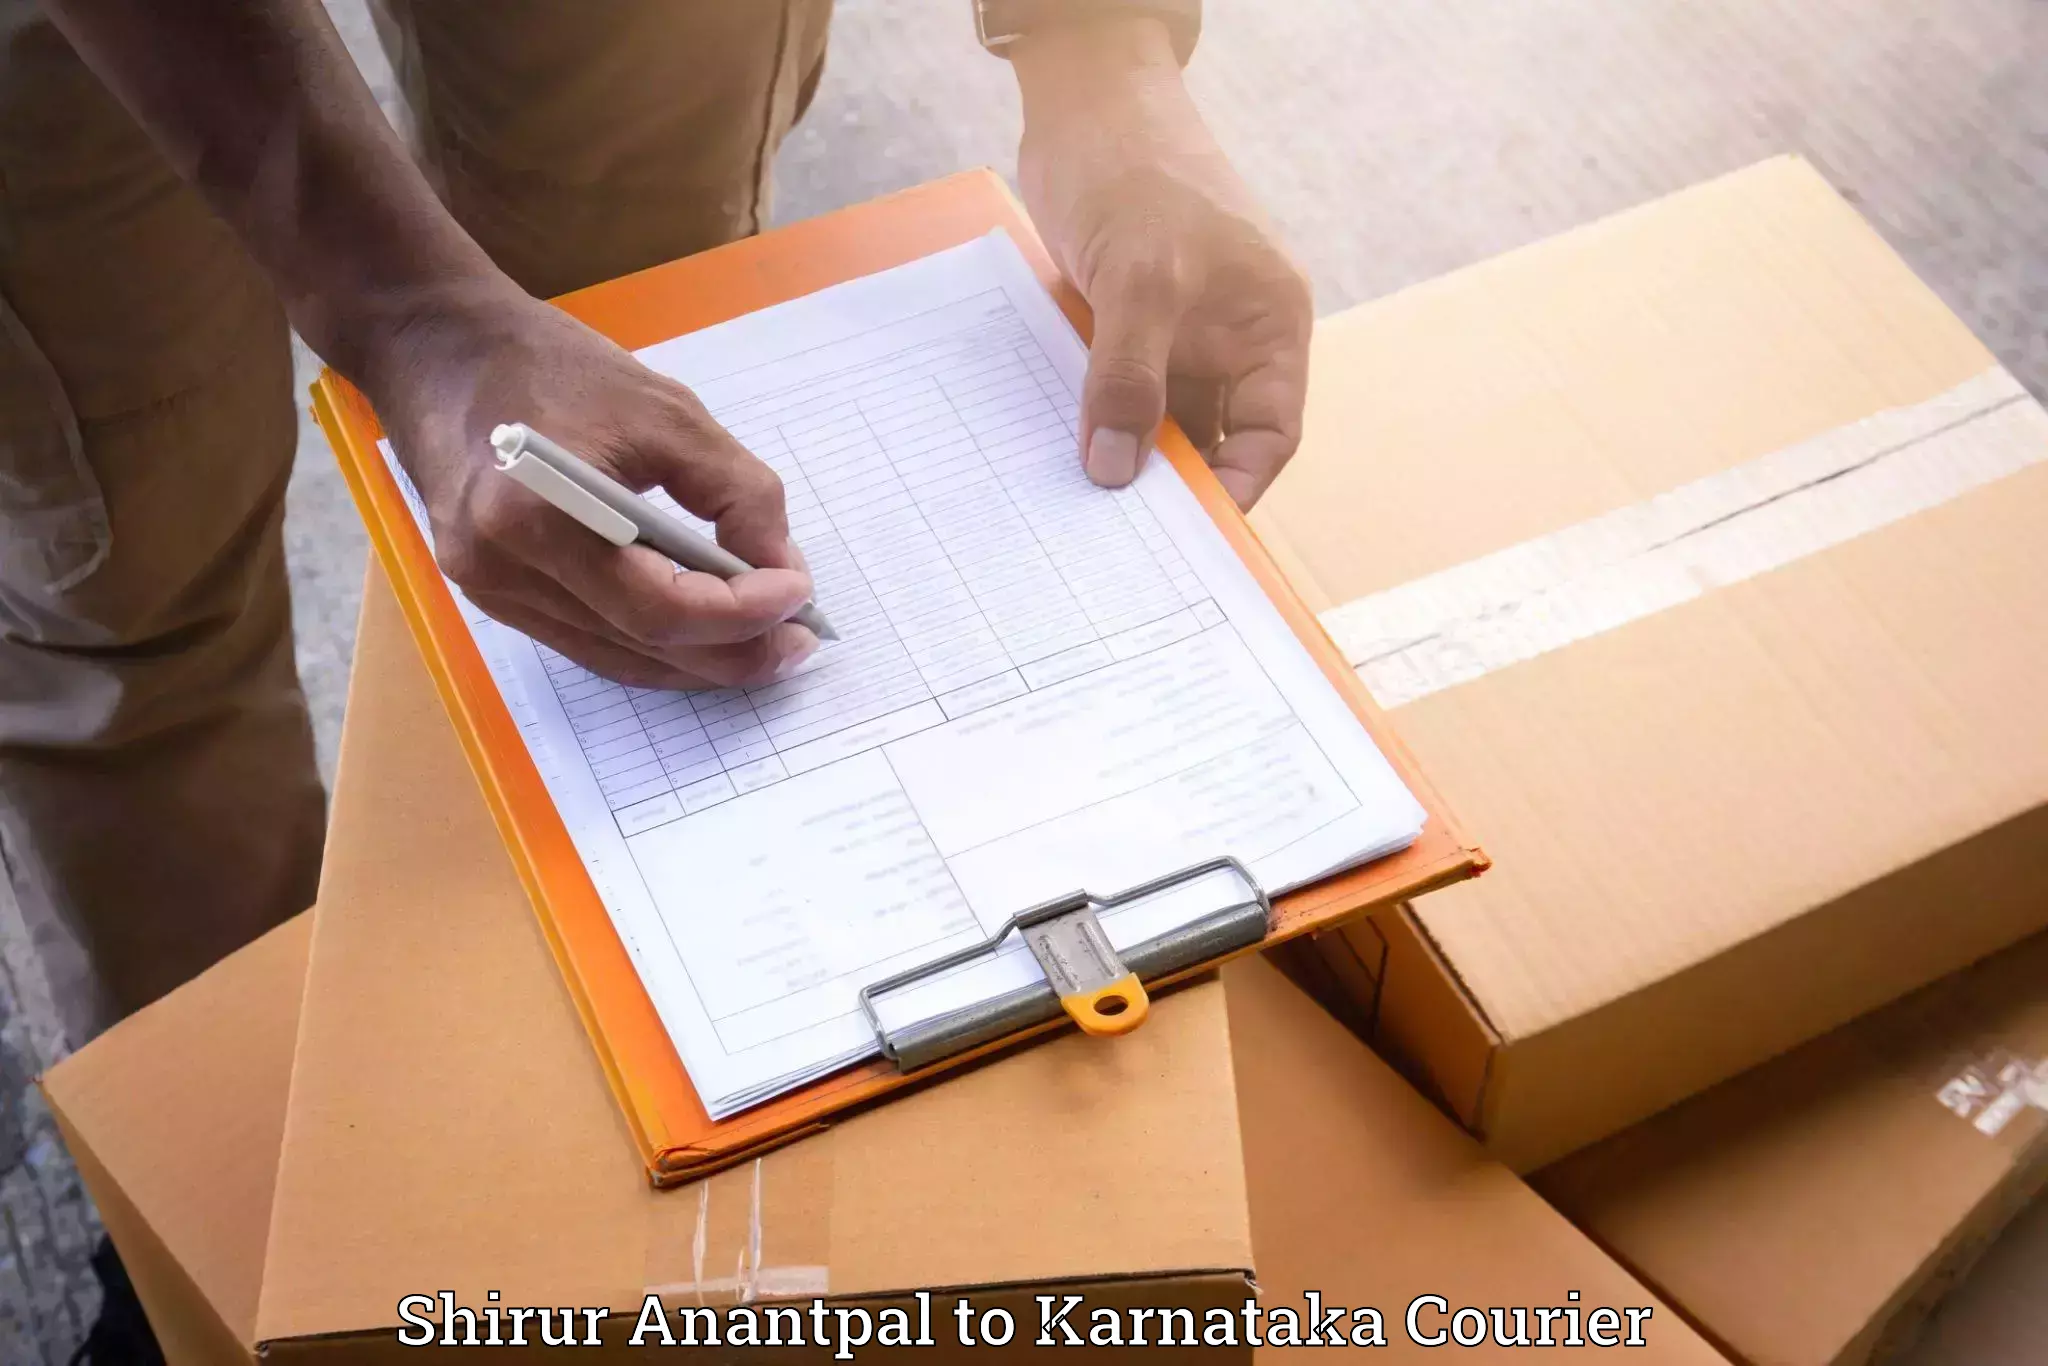 Furniture transport professionals Shirur Anantpal to Karnataka